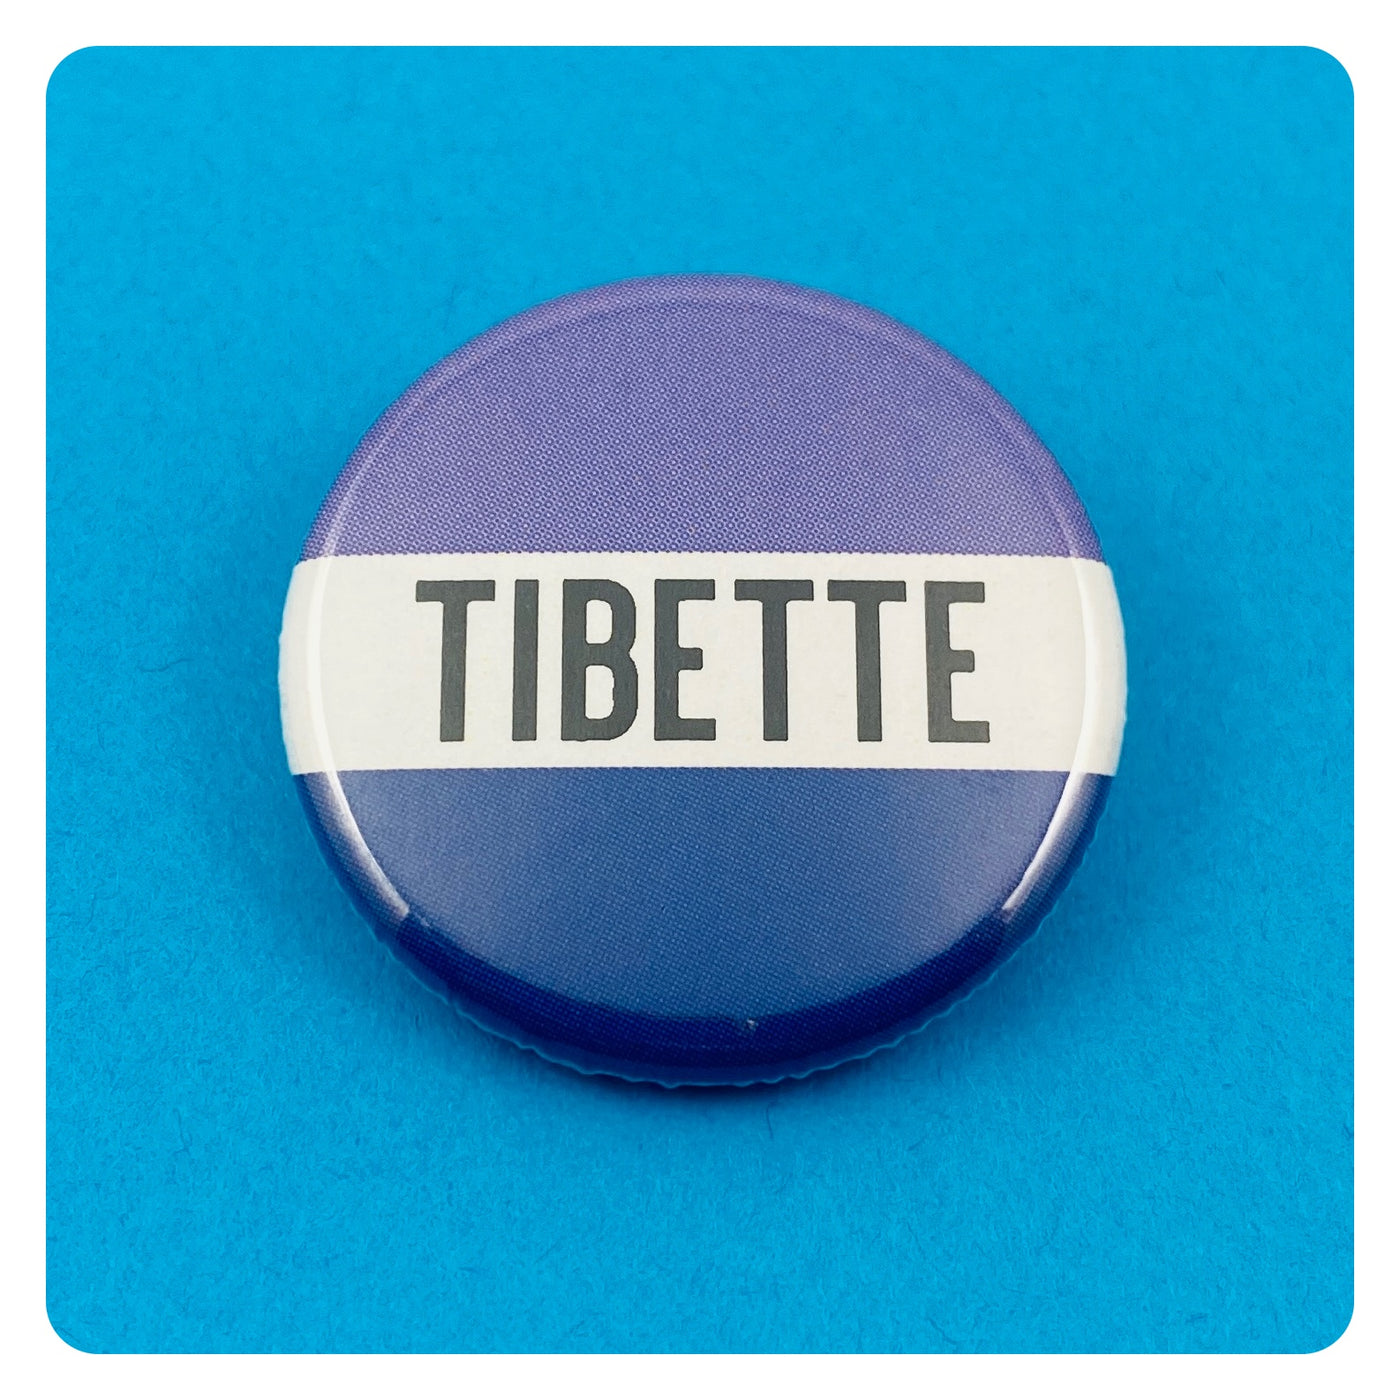 Tibette Ship Button